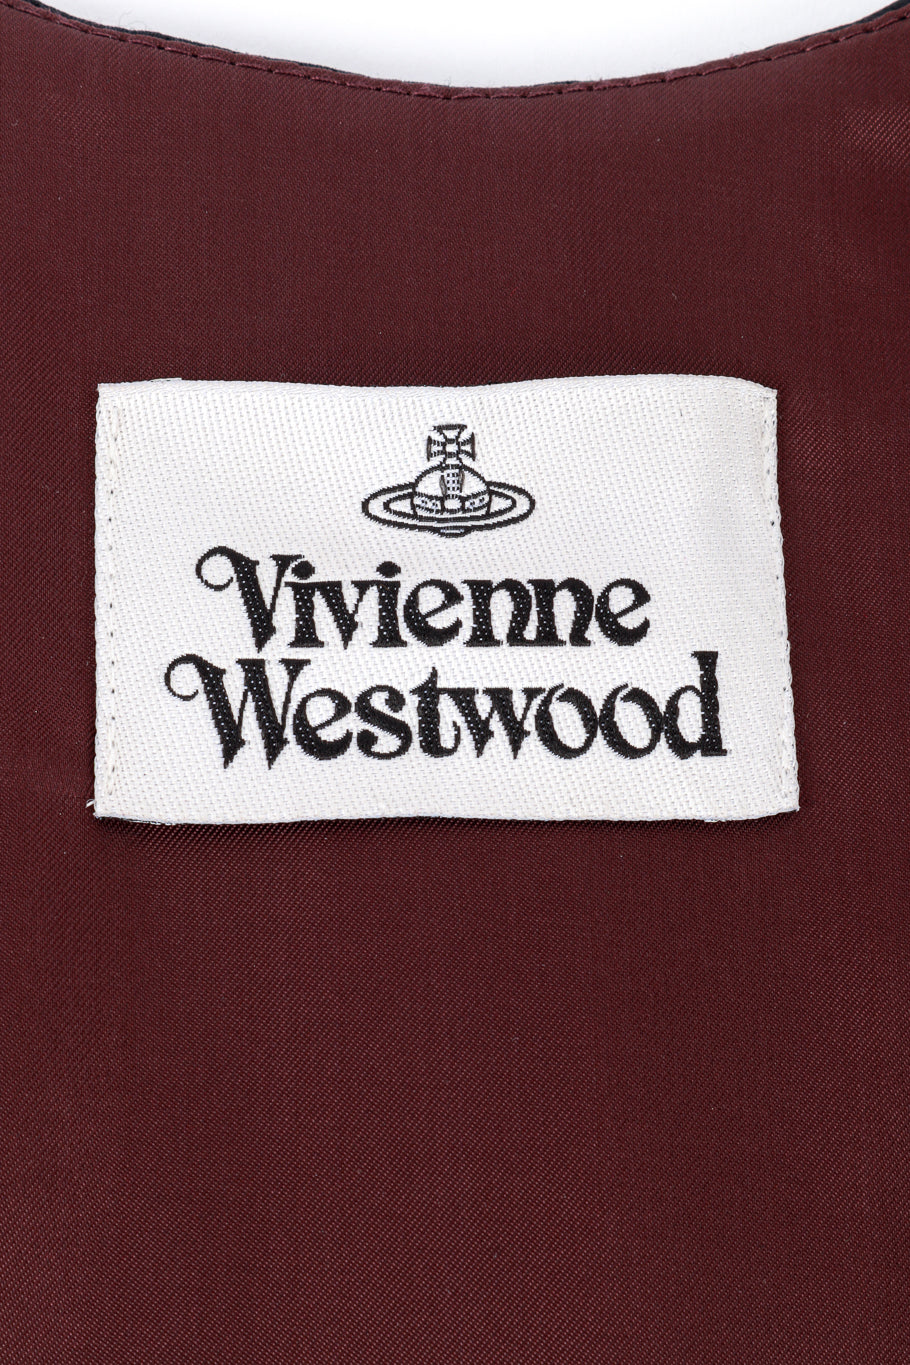 Vivienne Westwood 2021 Portrait Corset label @RECESS LA